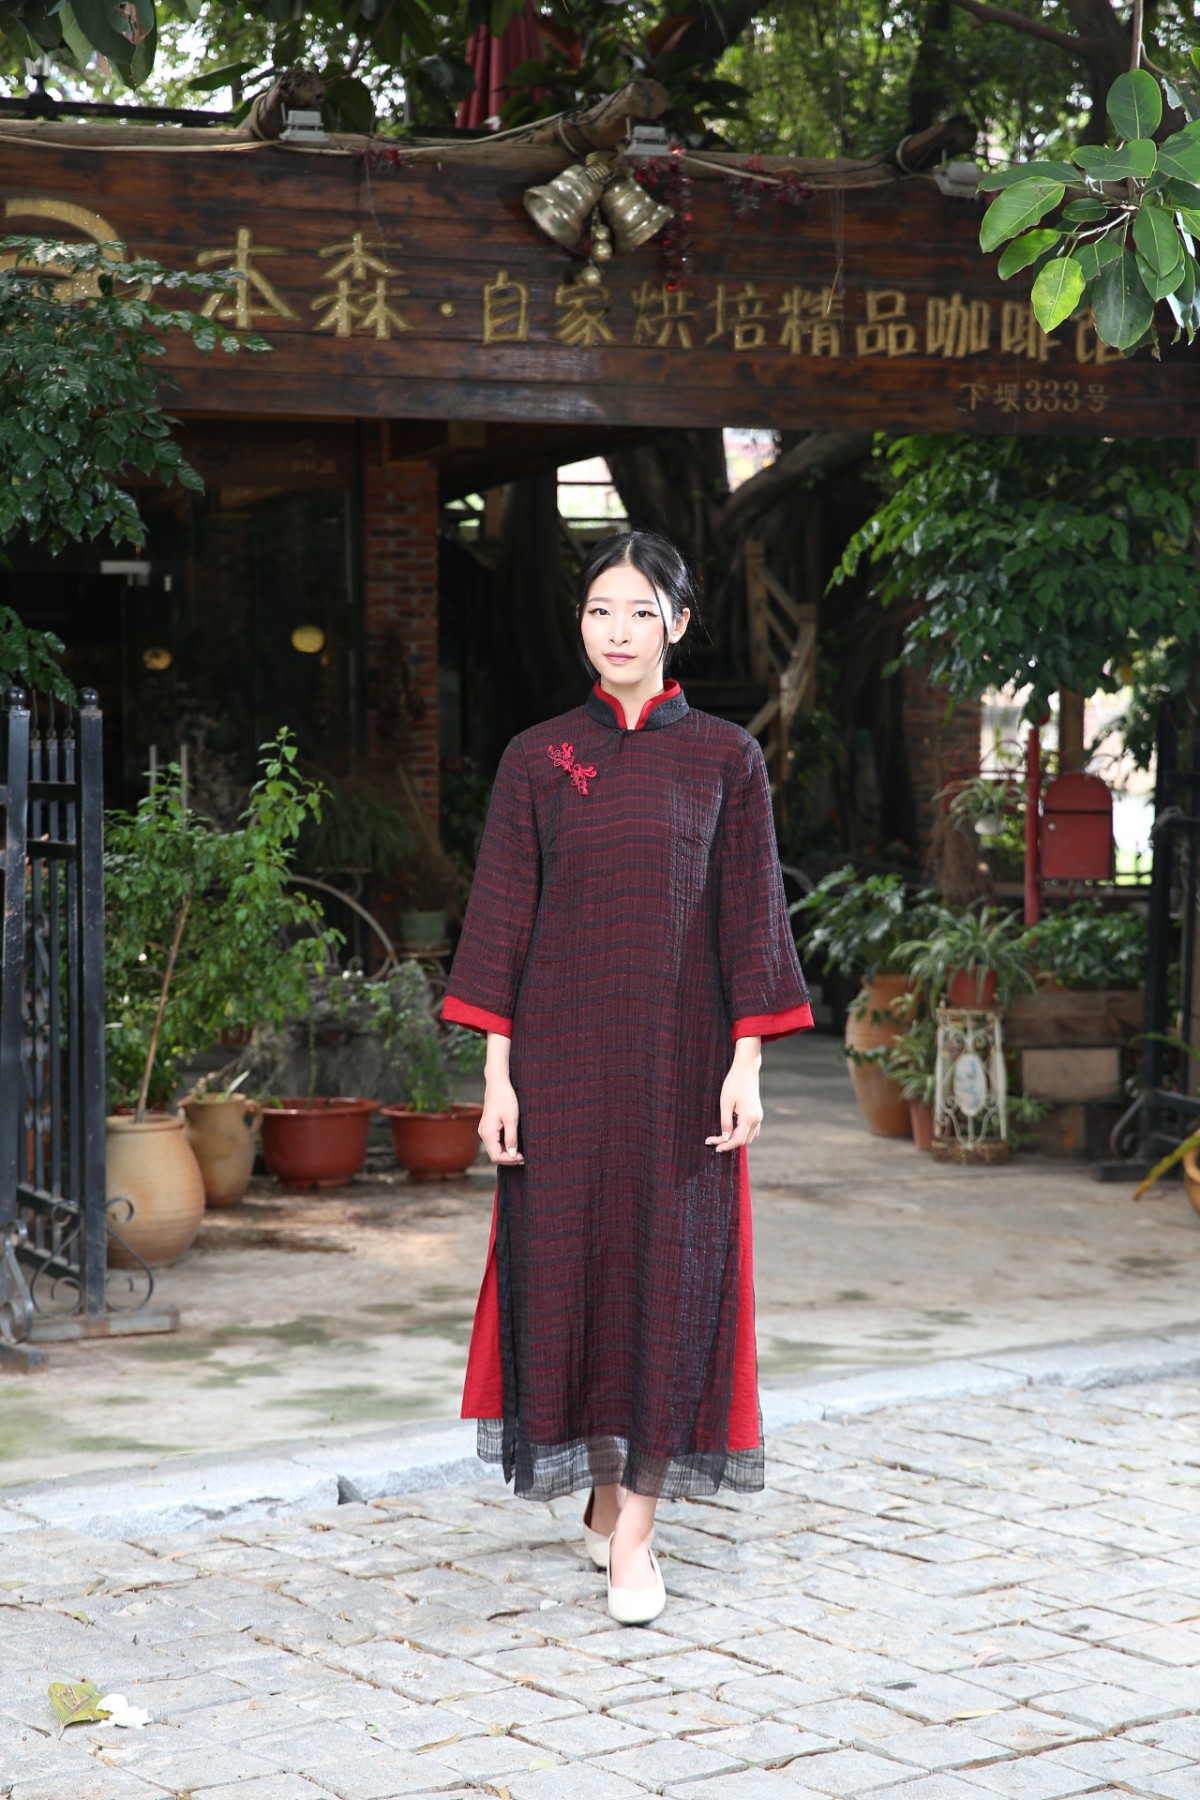 木棉道唐装 中国风女装 中式复古风 17014长袖连衣裙